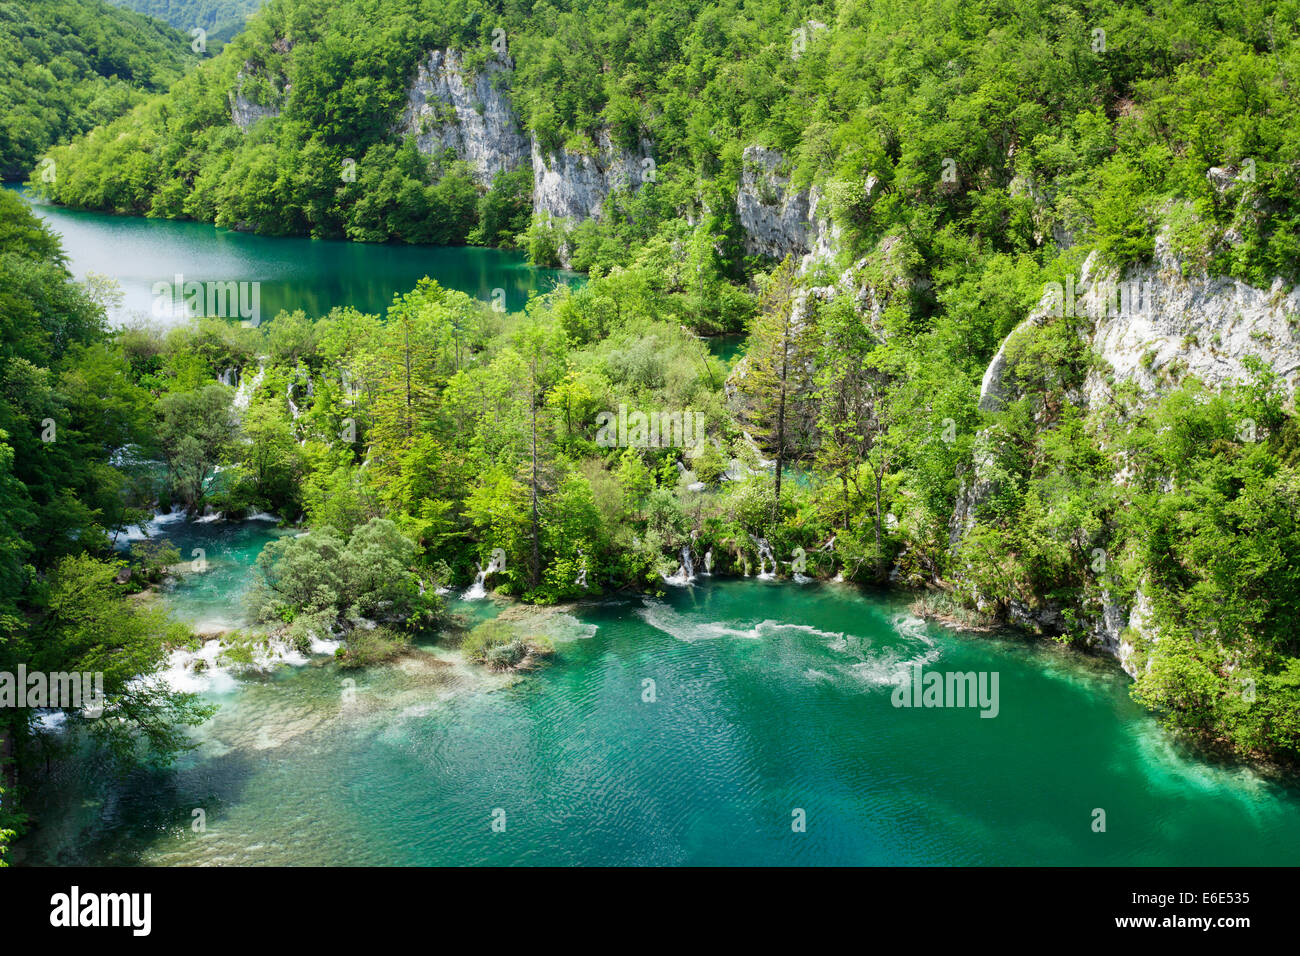 La partie basse des lacs, lac Gavanovac et lac Milanovac, le parc national des Lacs de Plitvice, classé au Patrimoine Mondial de l'UNESCO, la Croatie Banque D'Images